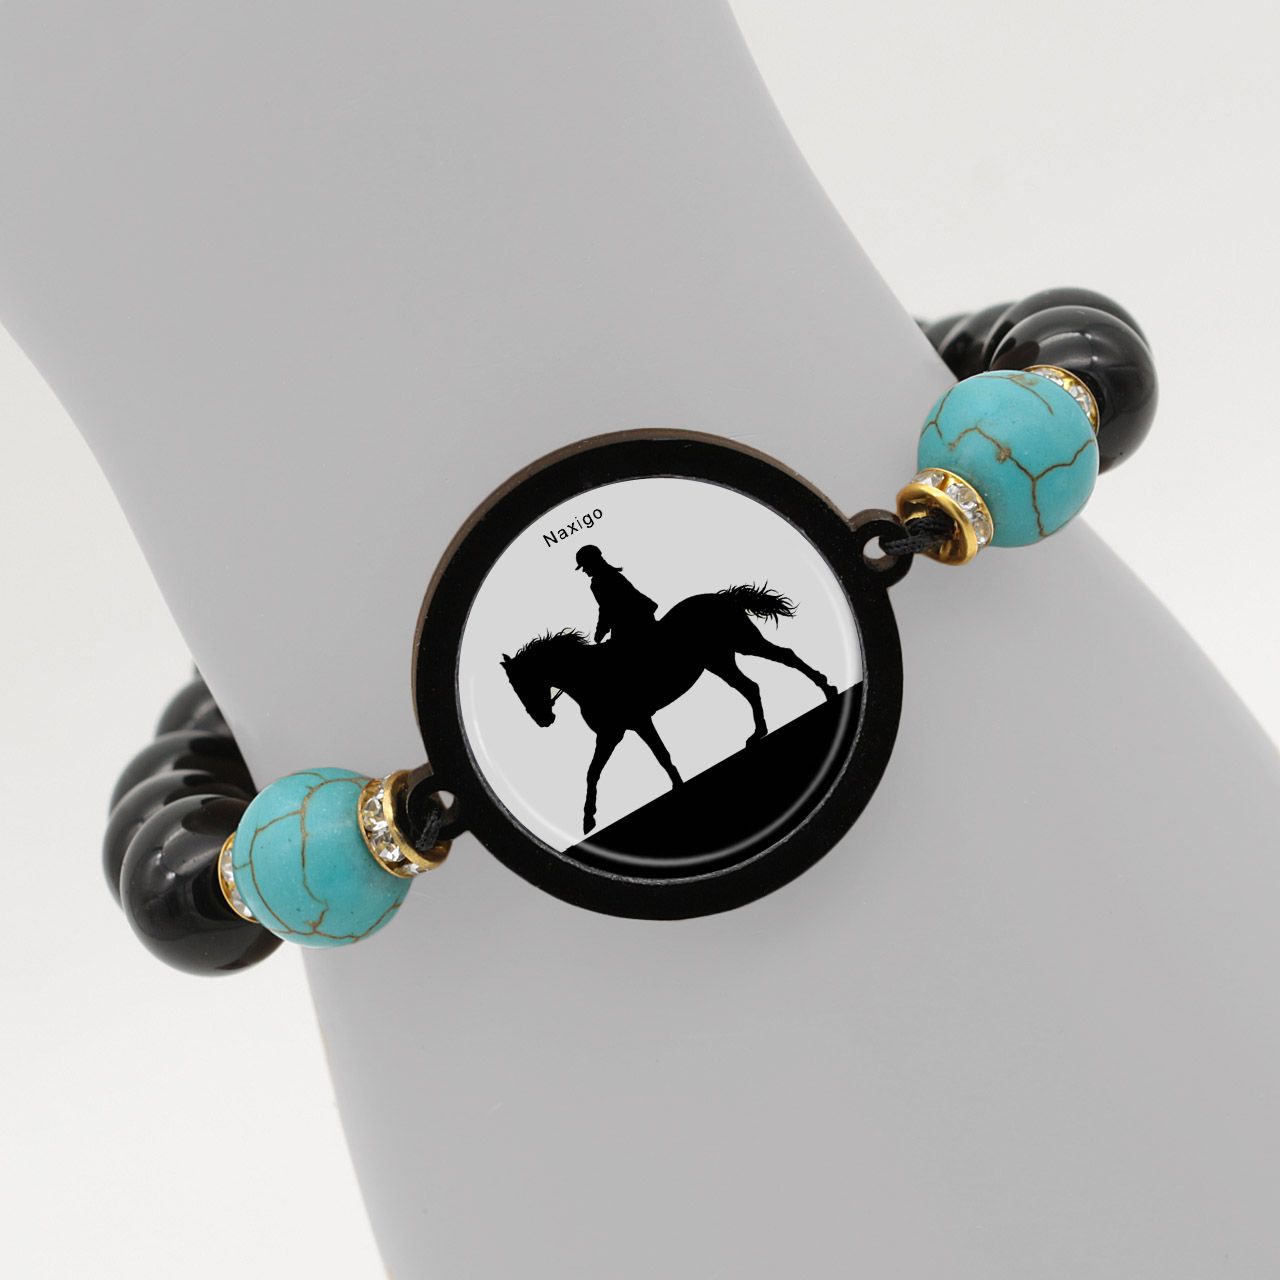 دستبند زنانه ناکسیگو طرح اسب سواری کد BR4011 -  - 6